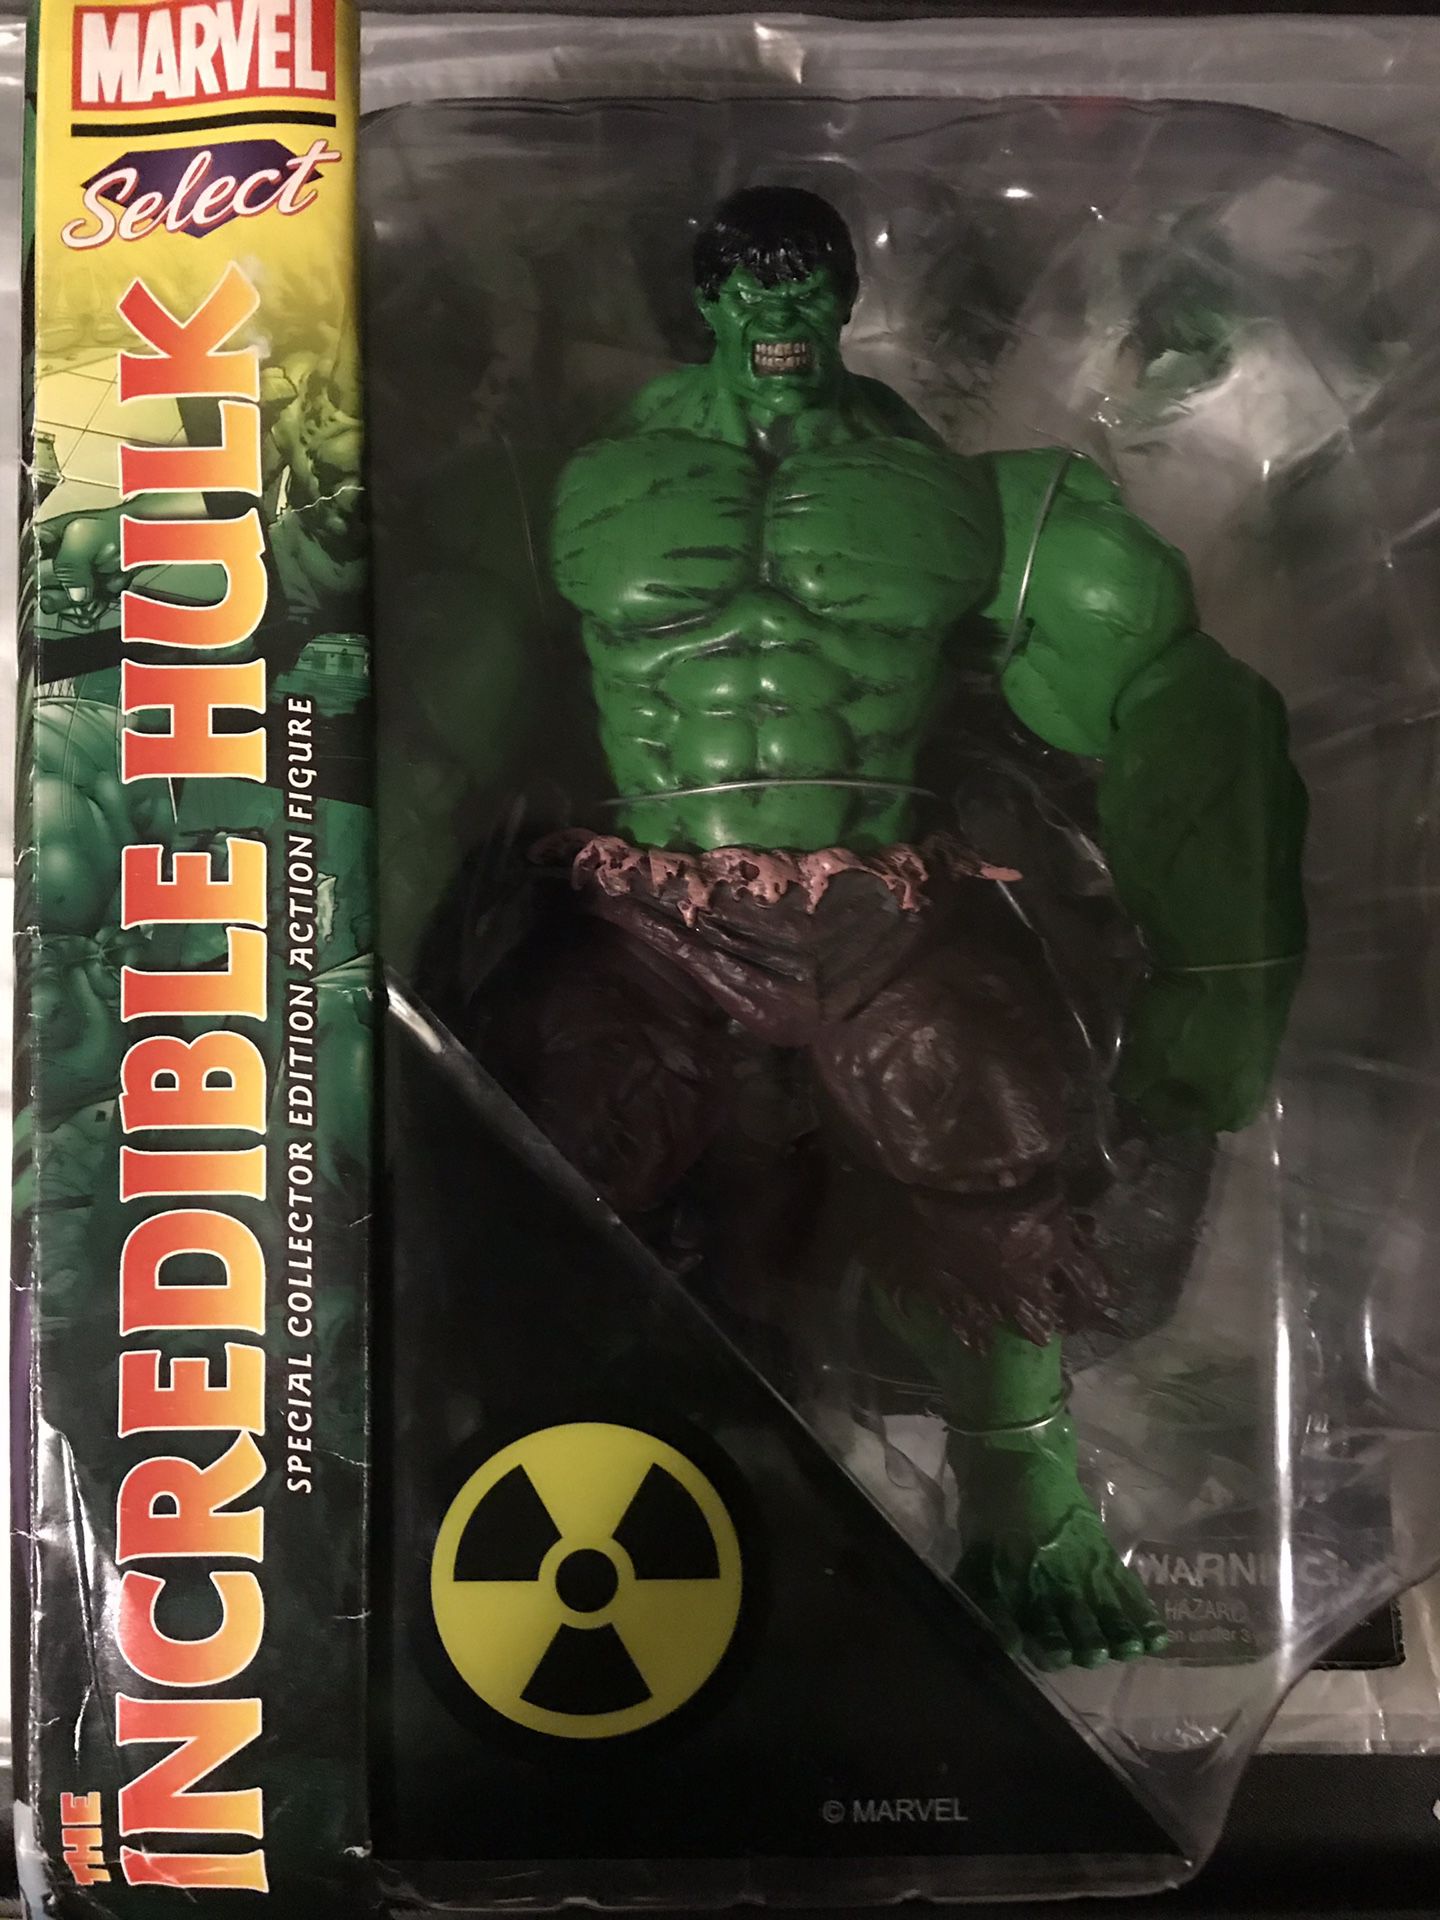 Marvel Diamond Select Incredible Hulk Action Figure